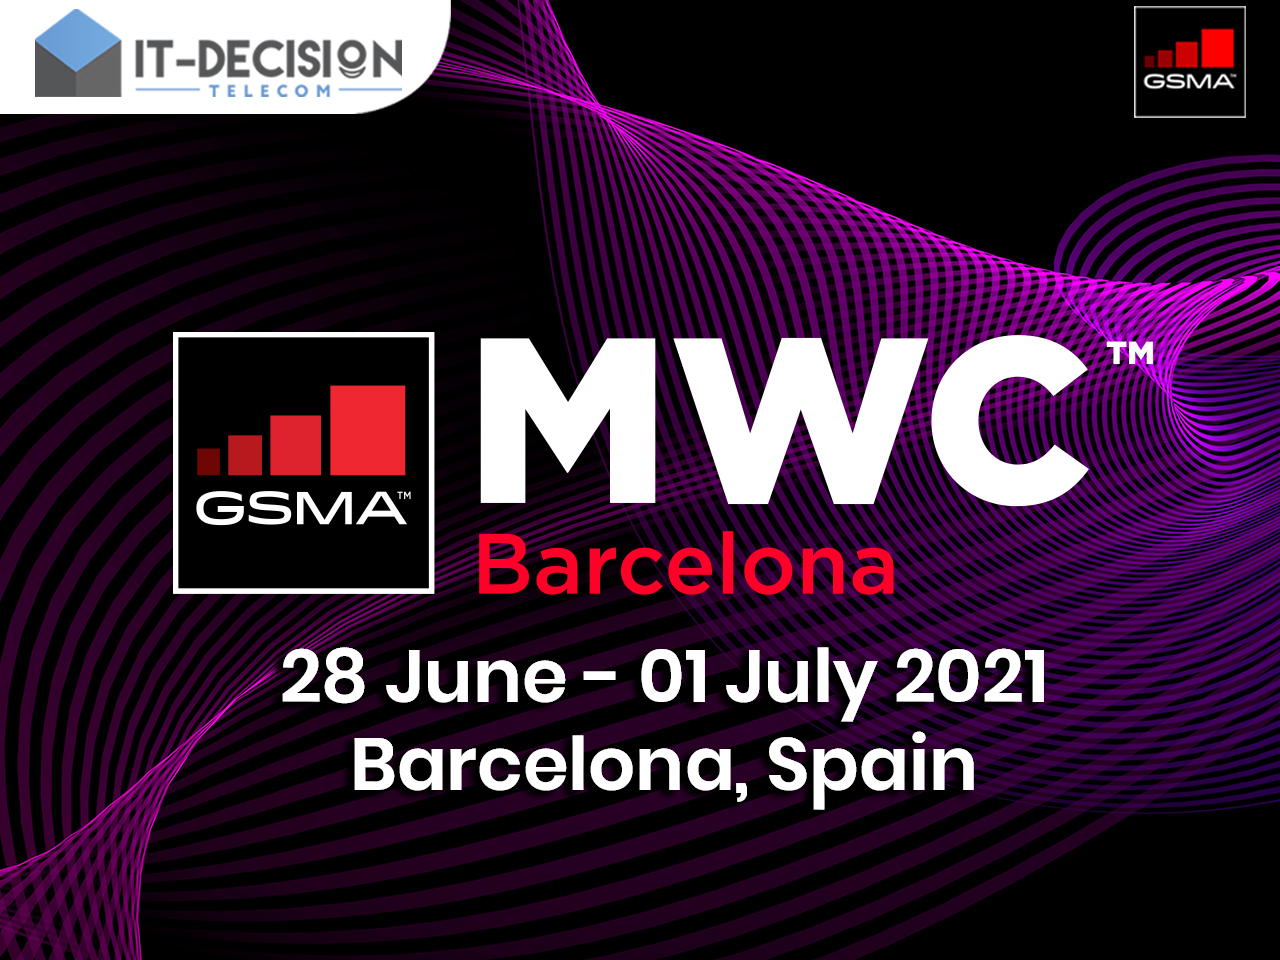 Meet ITD Telecom at Mobile World Congress Barcelona 2021!